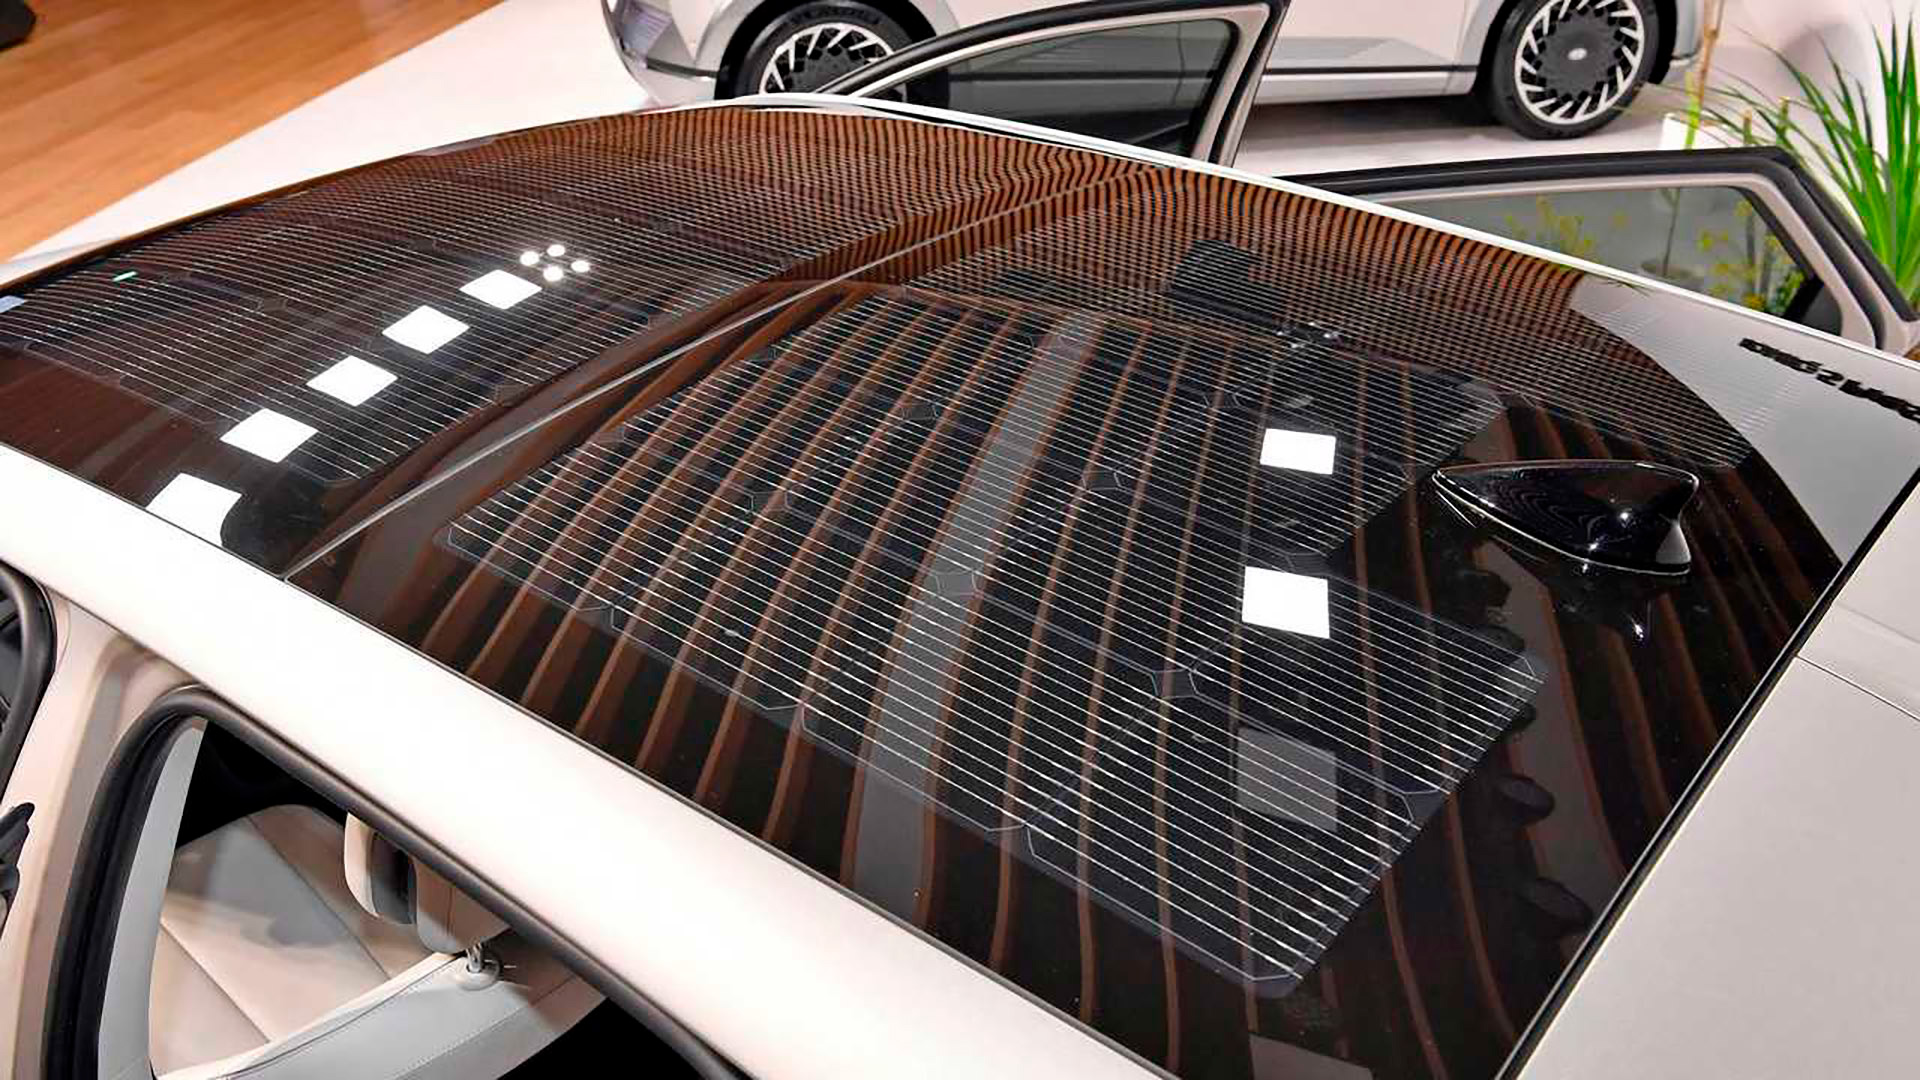 La tecnología ha permitido que las nuevas células fotovoltaicas tengan mayor capacidad que anteriormente